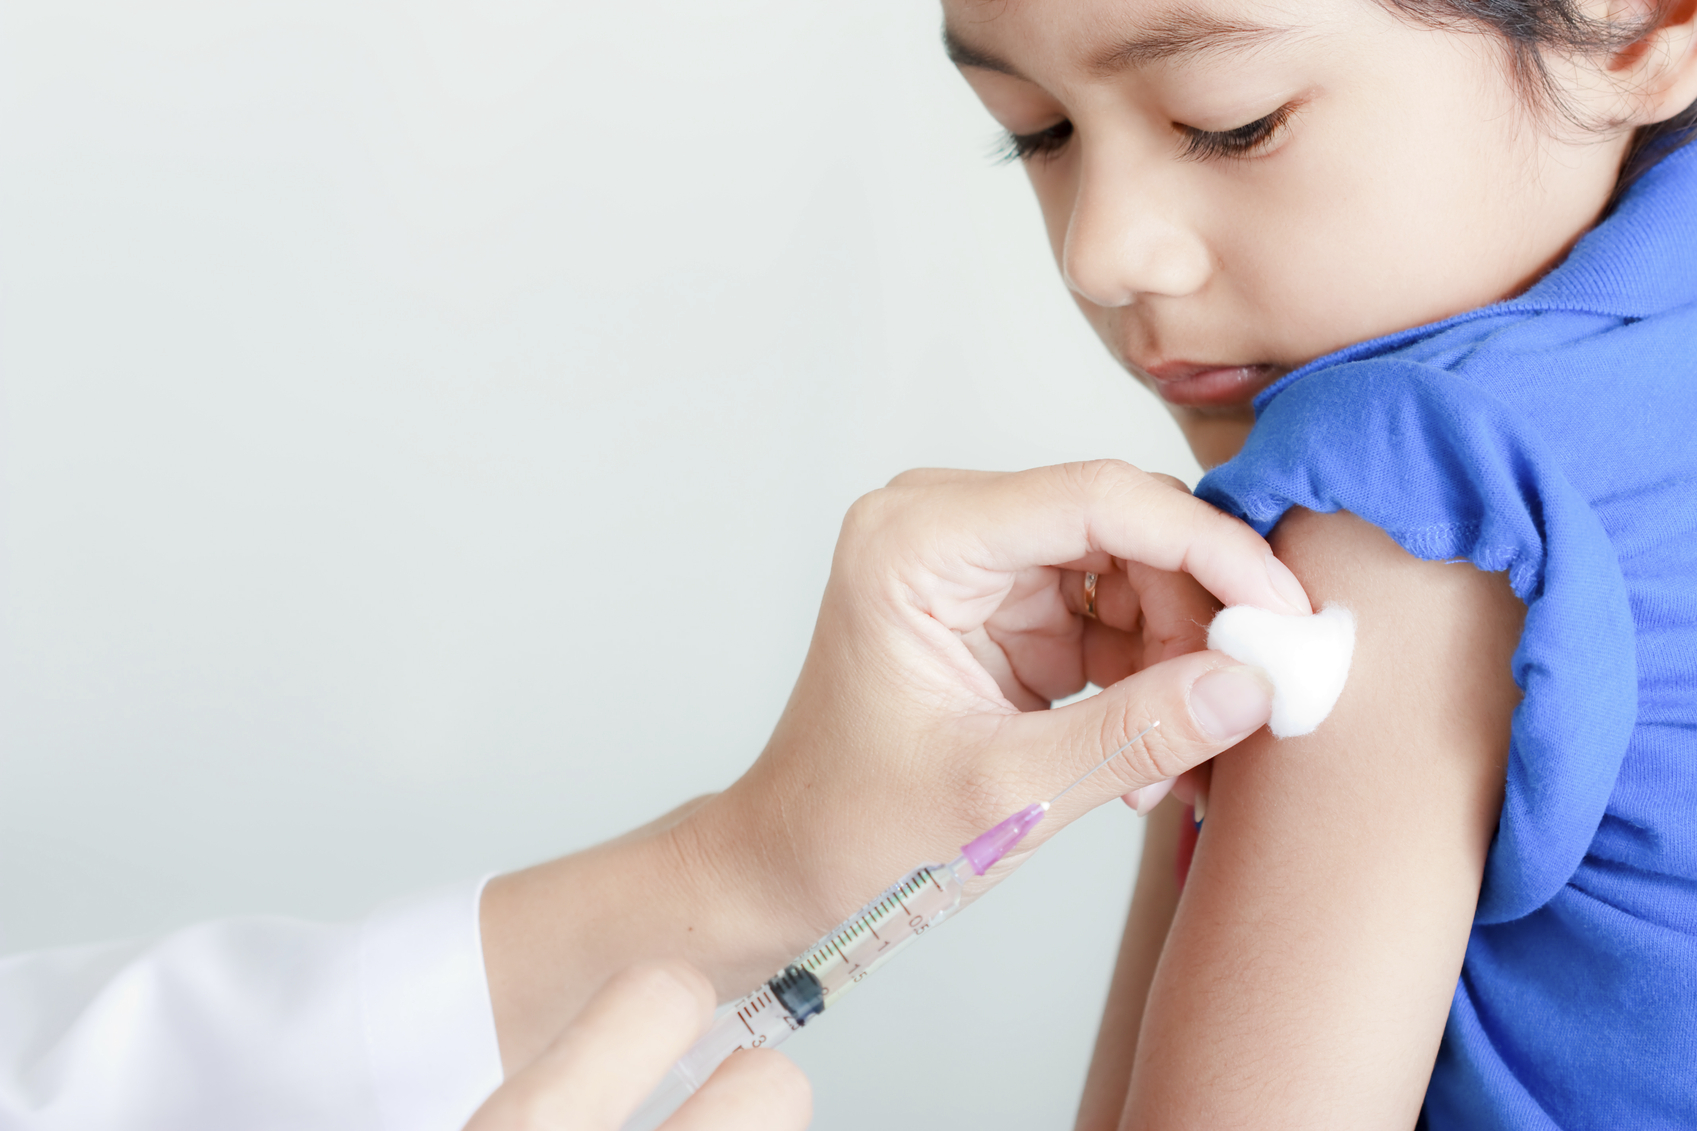 Why Do We Need Immunisation?